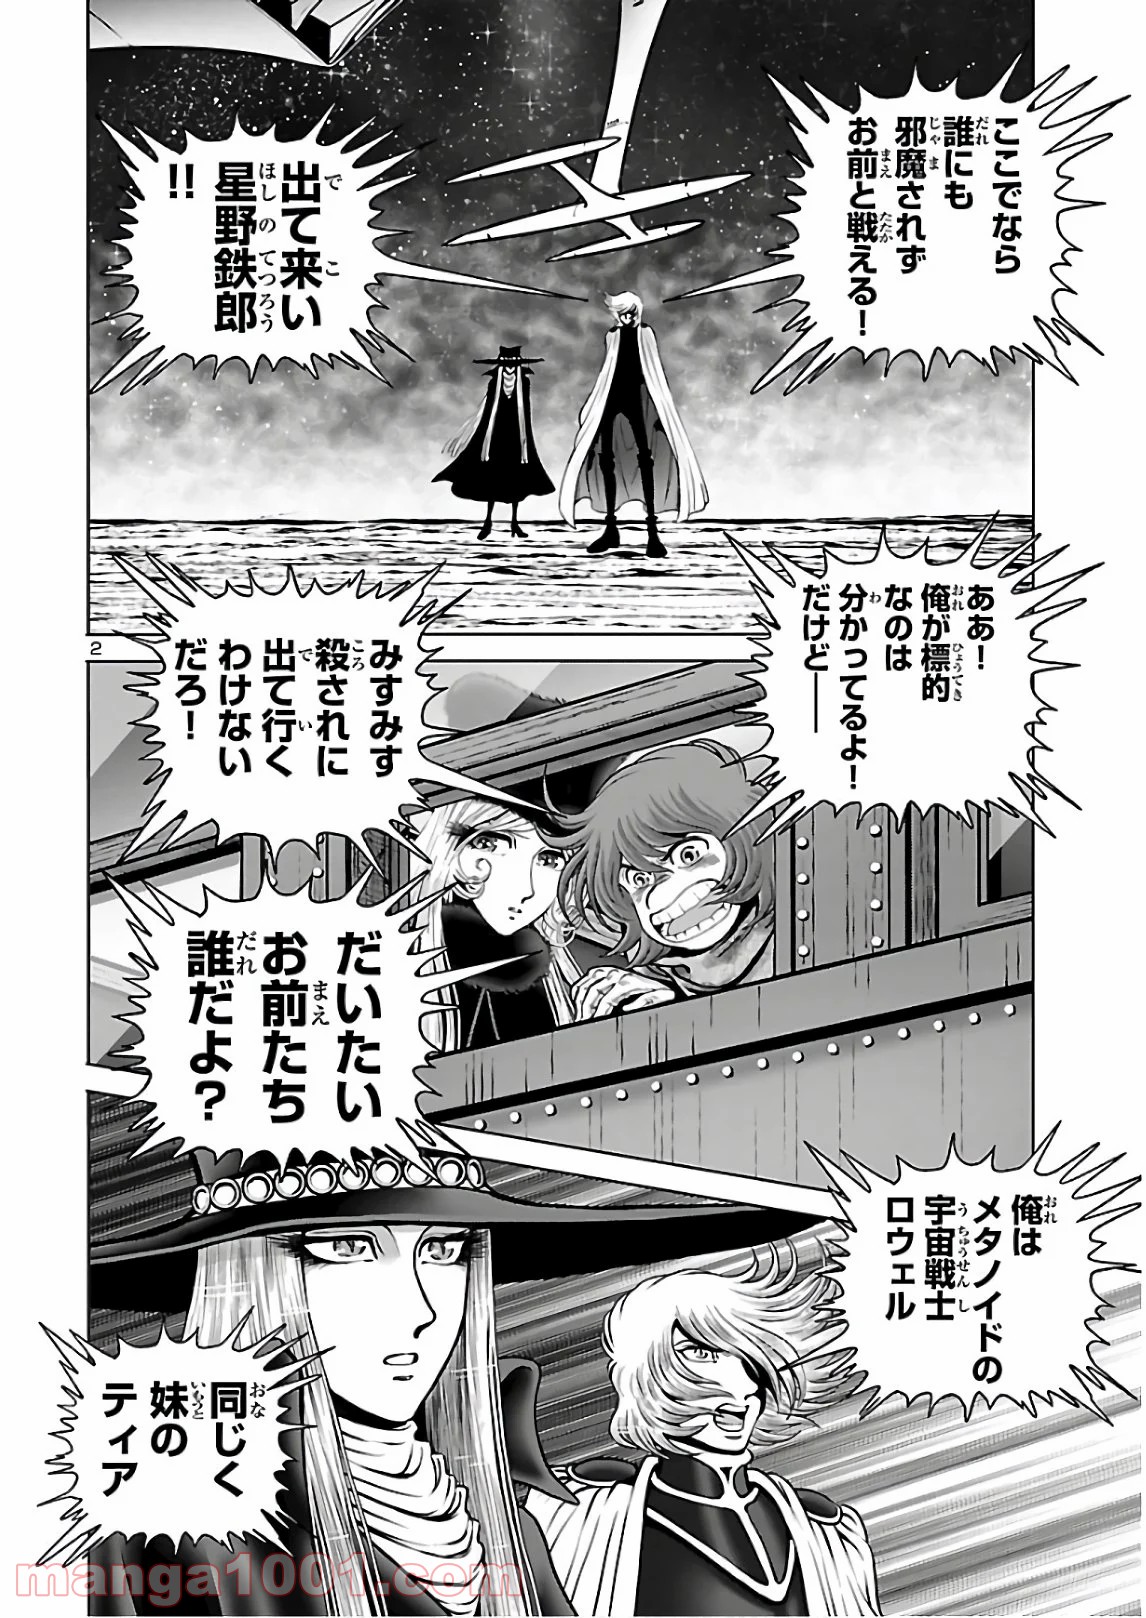 銀河鉄道999 Another Story アルティメットジャーニー Raw 第31話 Manga Raw